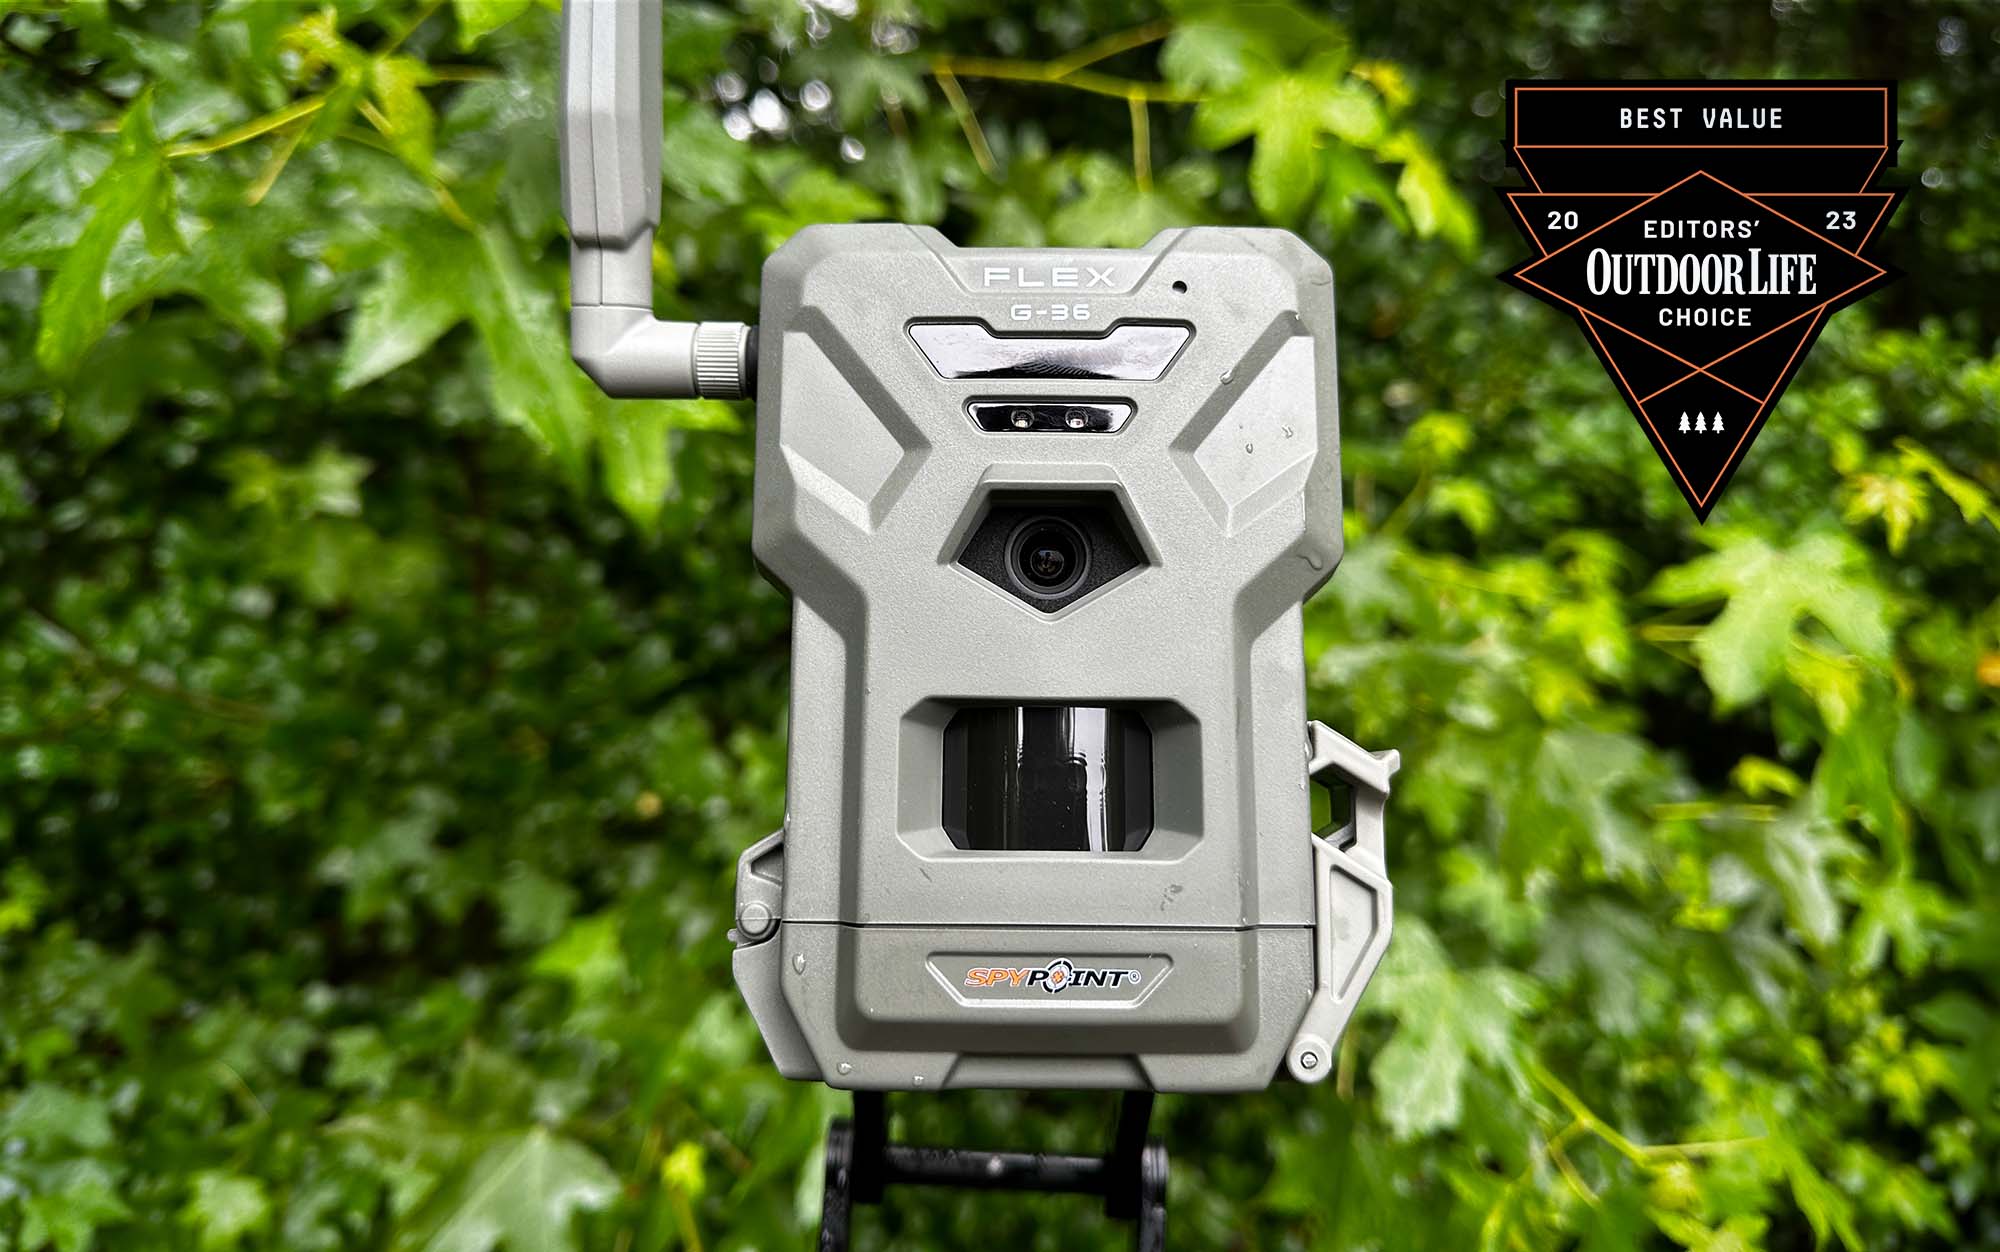 spypoint flex g-36 cellular trail camera